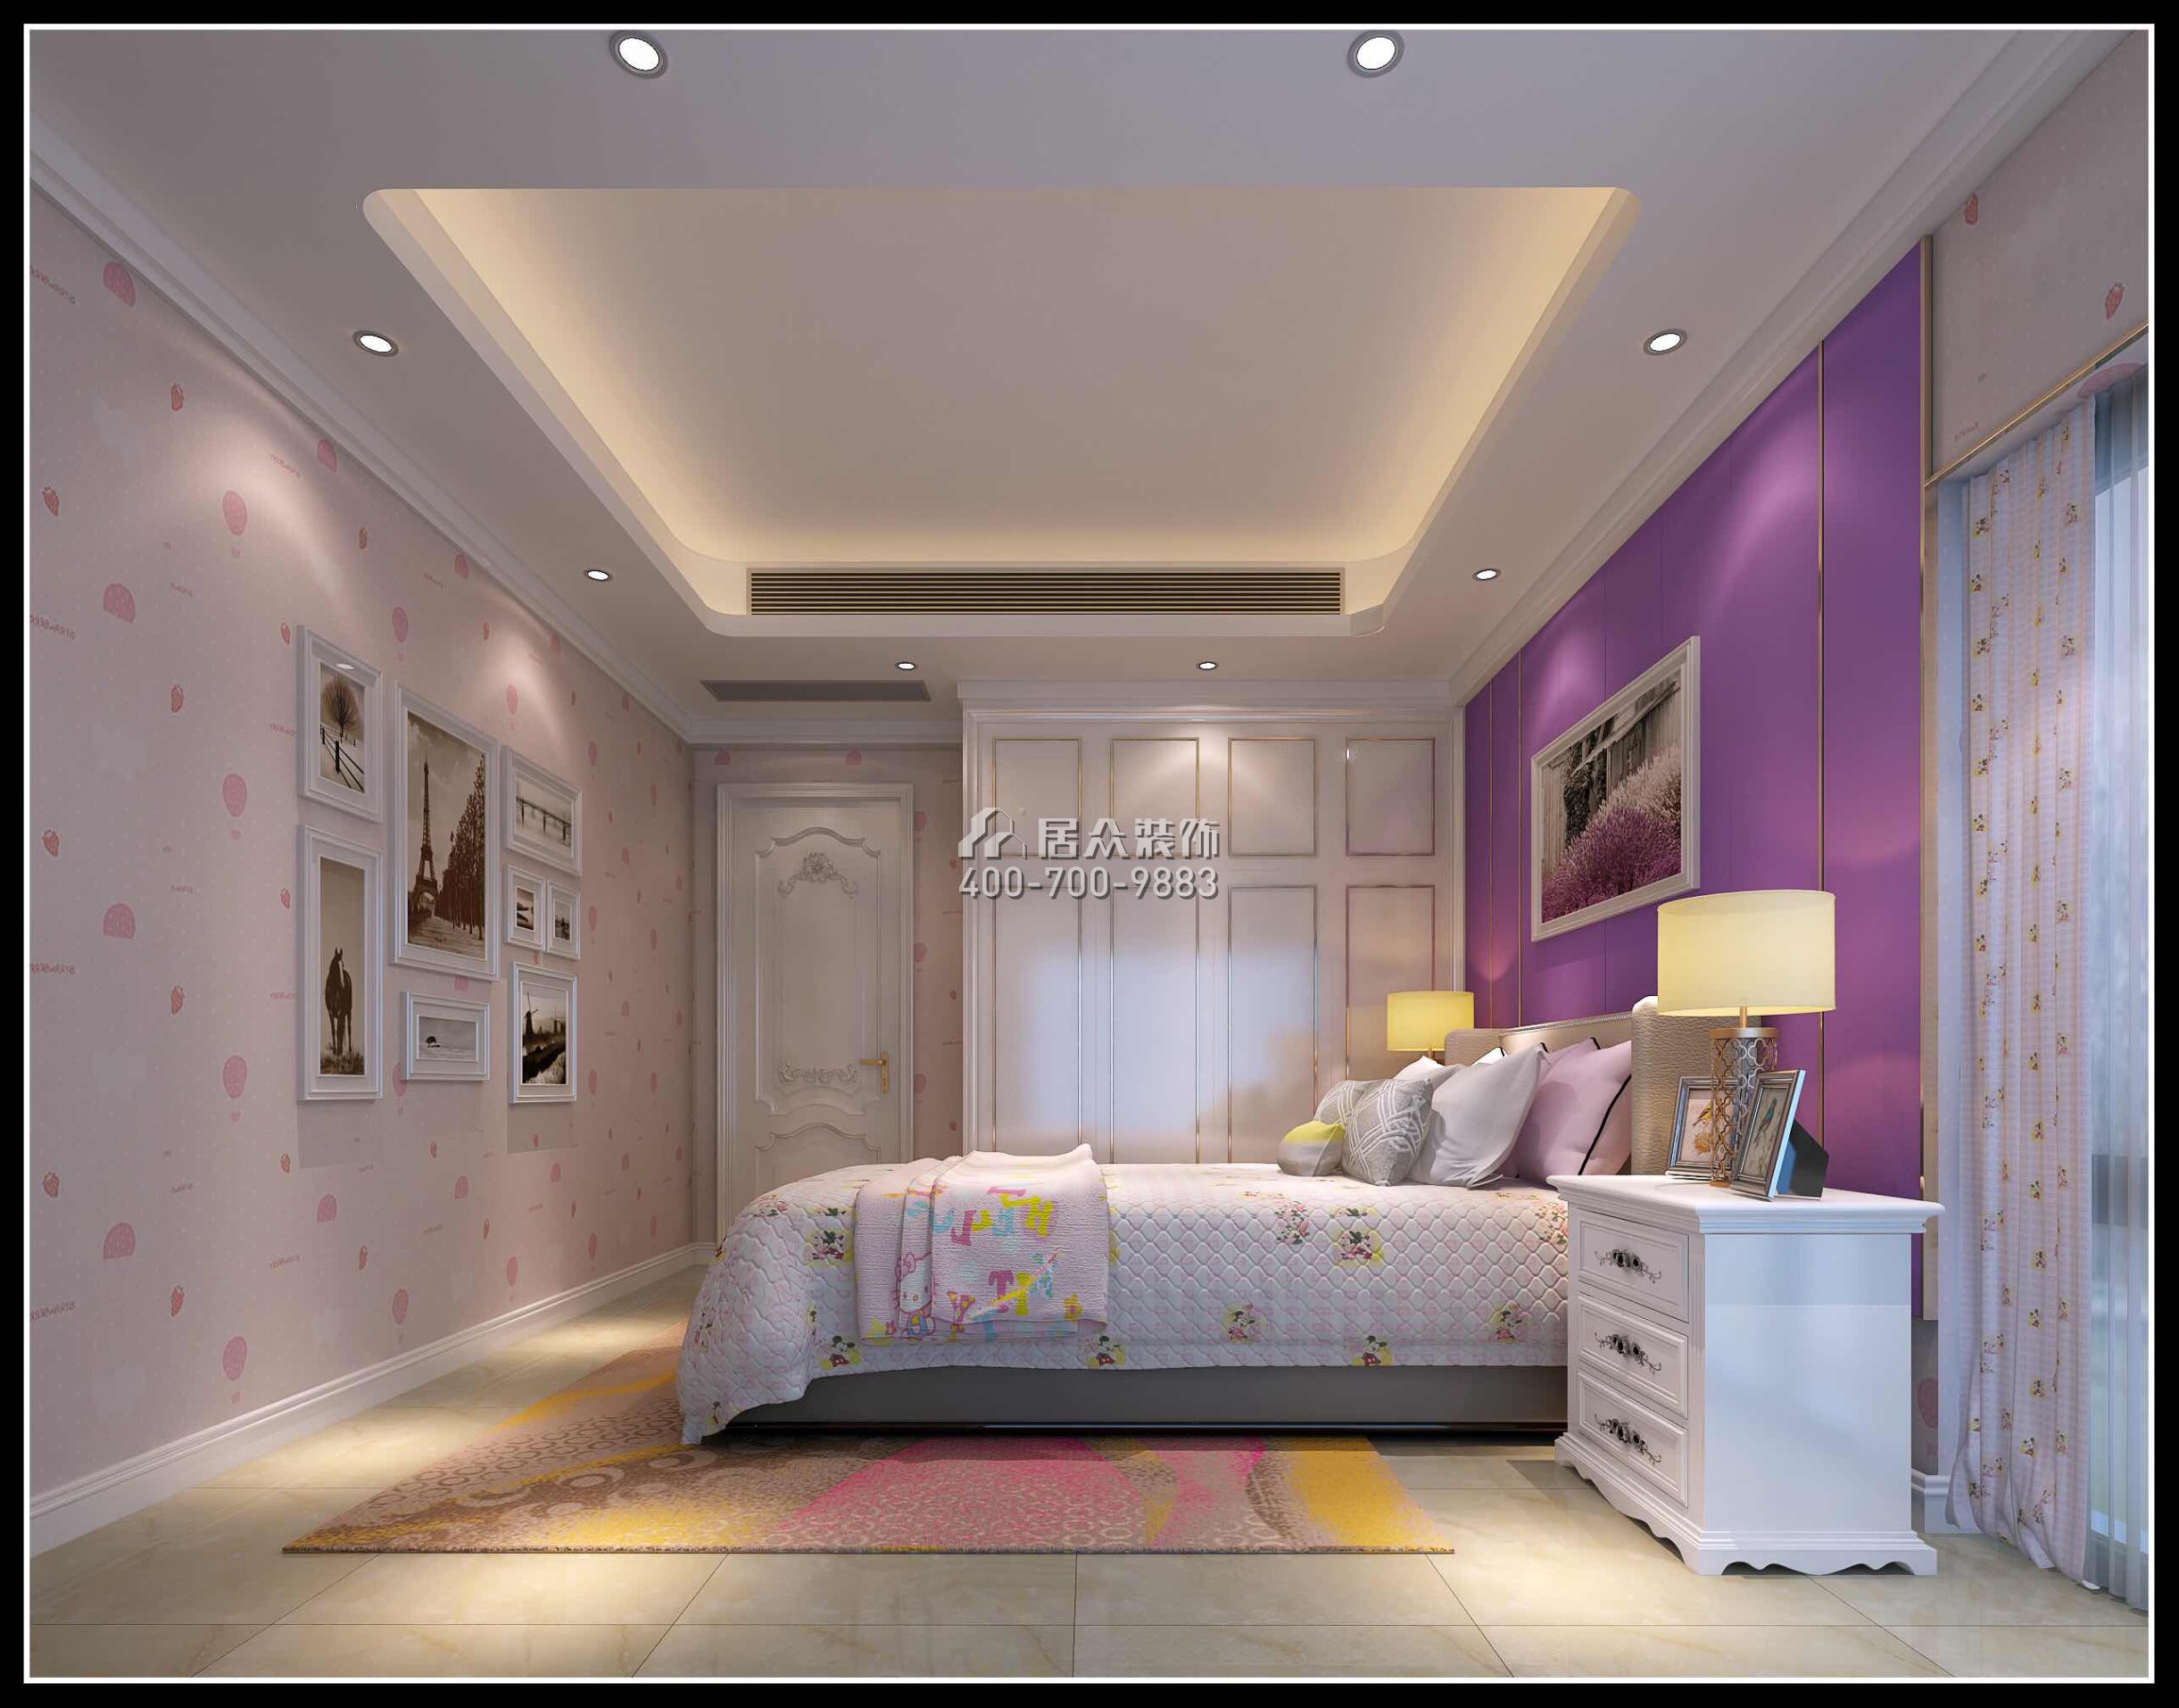 勤诚达140平方米欧式风格平层户型卧室装修效果图